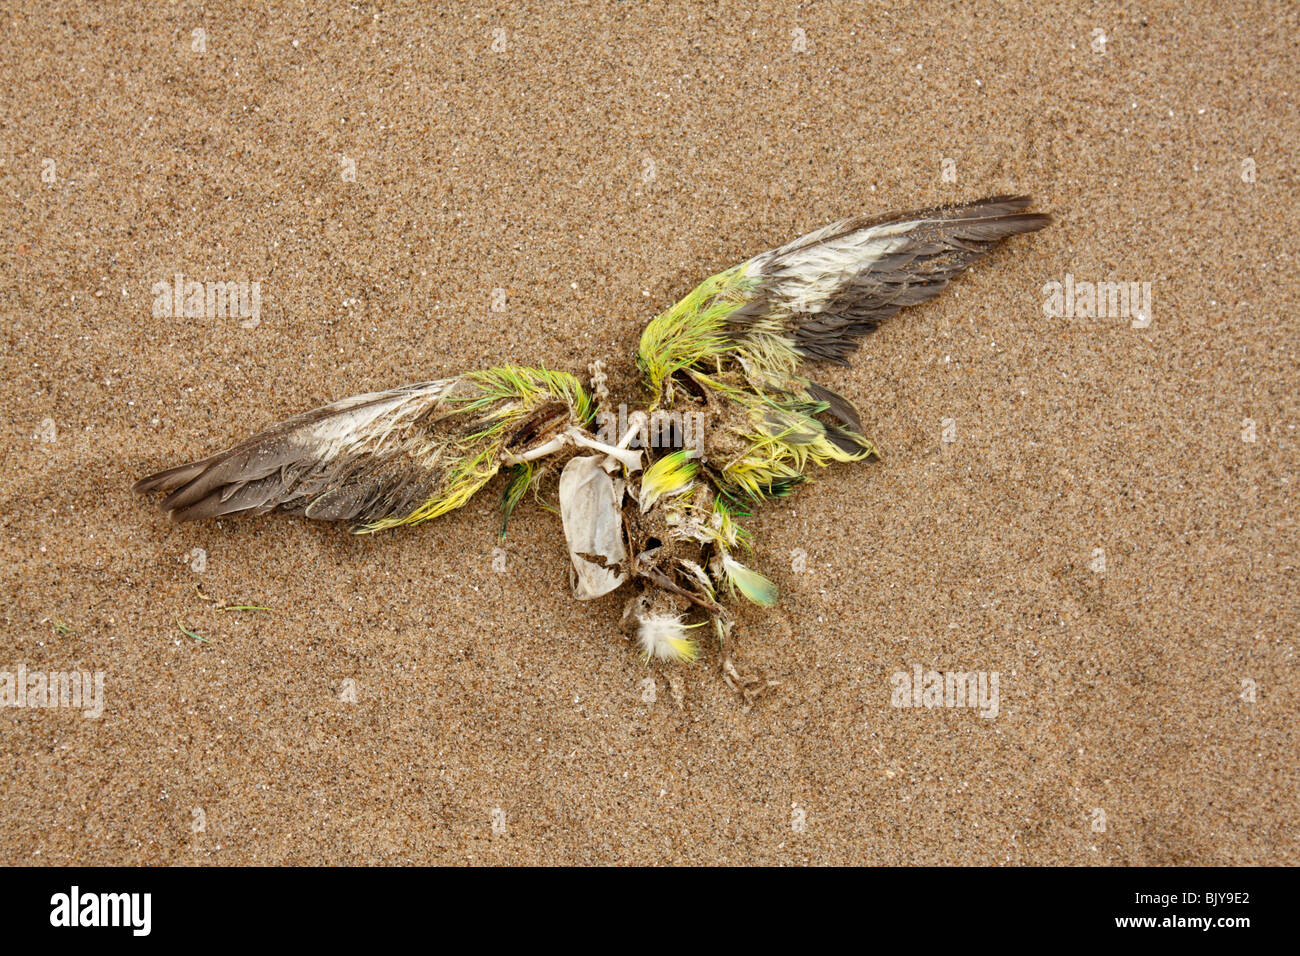 Pájaro muerto en una playa de arena con alas extendidas Foto de stock